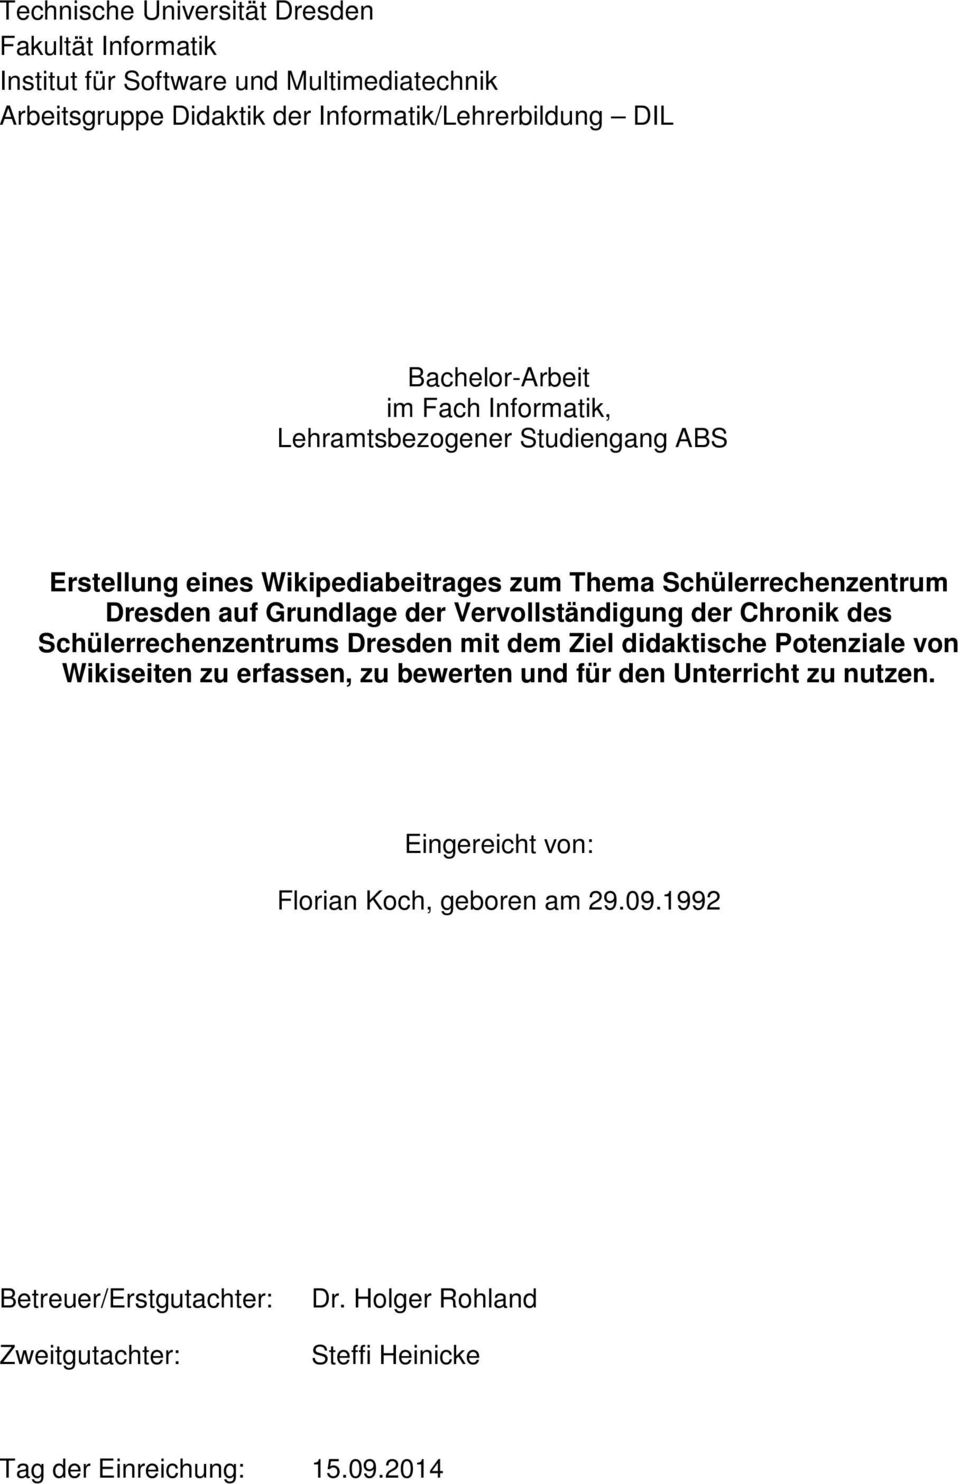 der Vervollständigung der Chronik des Schülerrechenzentrums Dresden mit dem Ziel didaktische Potenziale von Wikiseiten zu erfassen, zu bewerten und für den